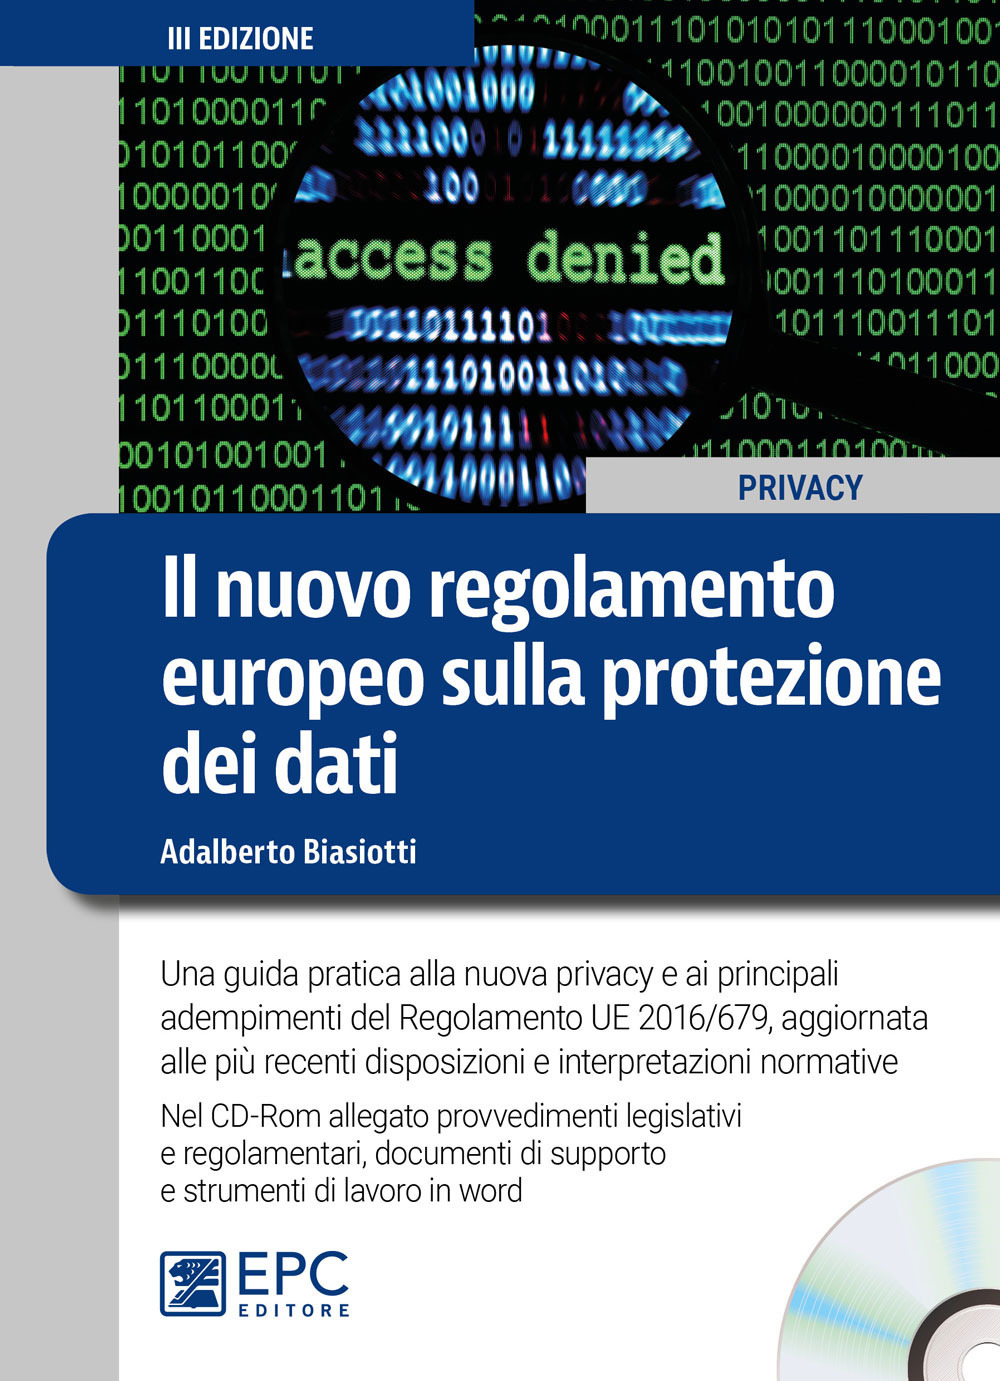 Il nuovo regolamento europeo sulla protezione dei dati. Una guida pratica alla nuova privacy e ai principali adempimenti del Regolamento UE 2016/679, aggiornata alle più recenti disposizioni e interpretazioni normative. Con CD-ROM